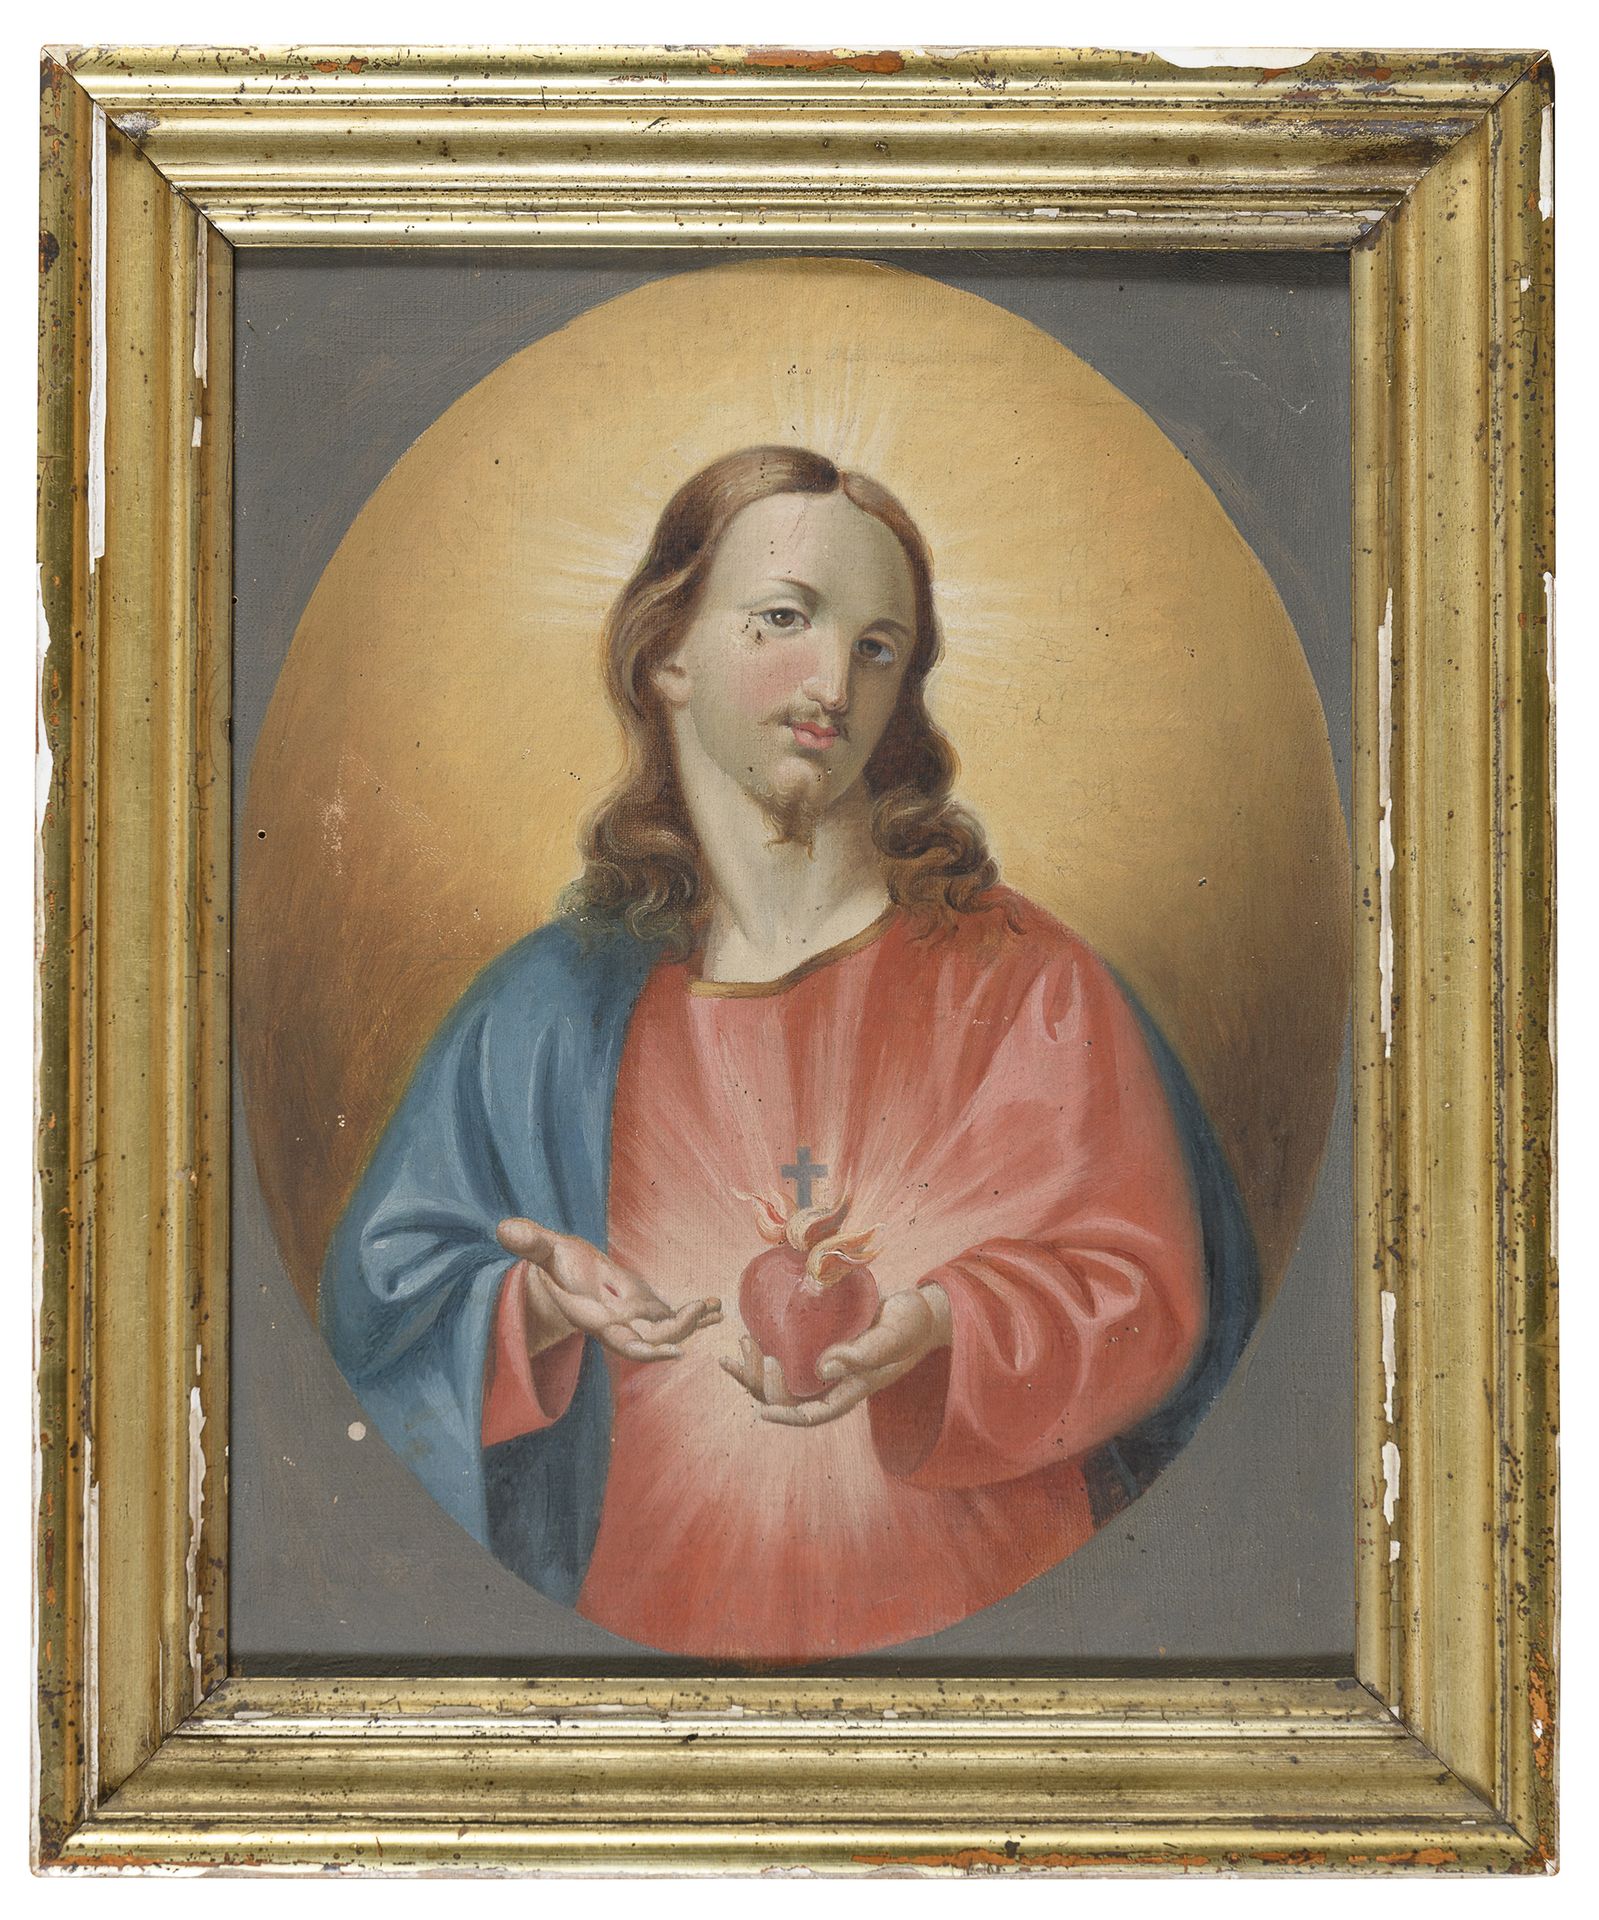 Null 罗马画家，19世纪



耶稣的圣心

布面油画，cm. 34 x 27

镀金木框（缺陷）